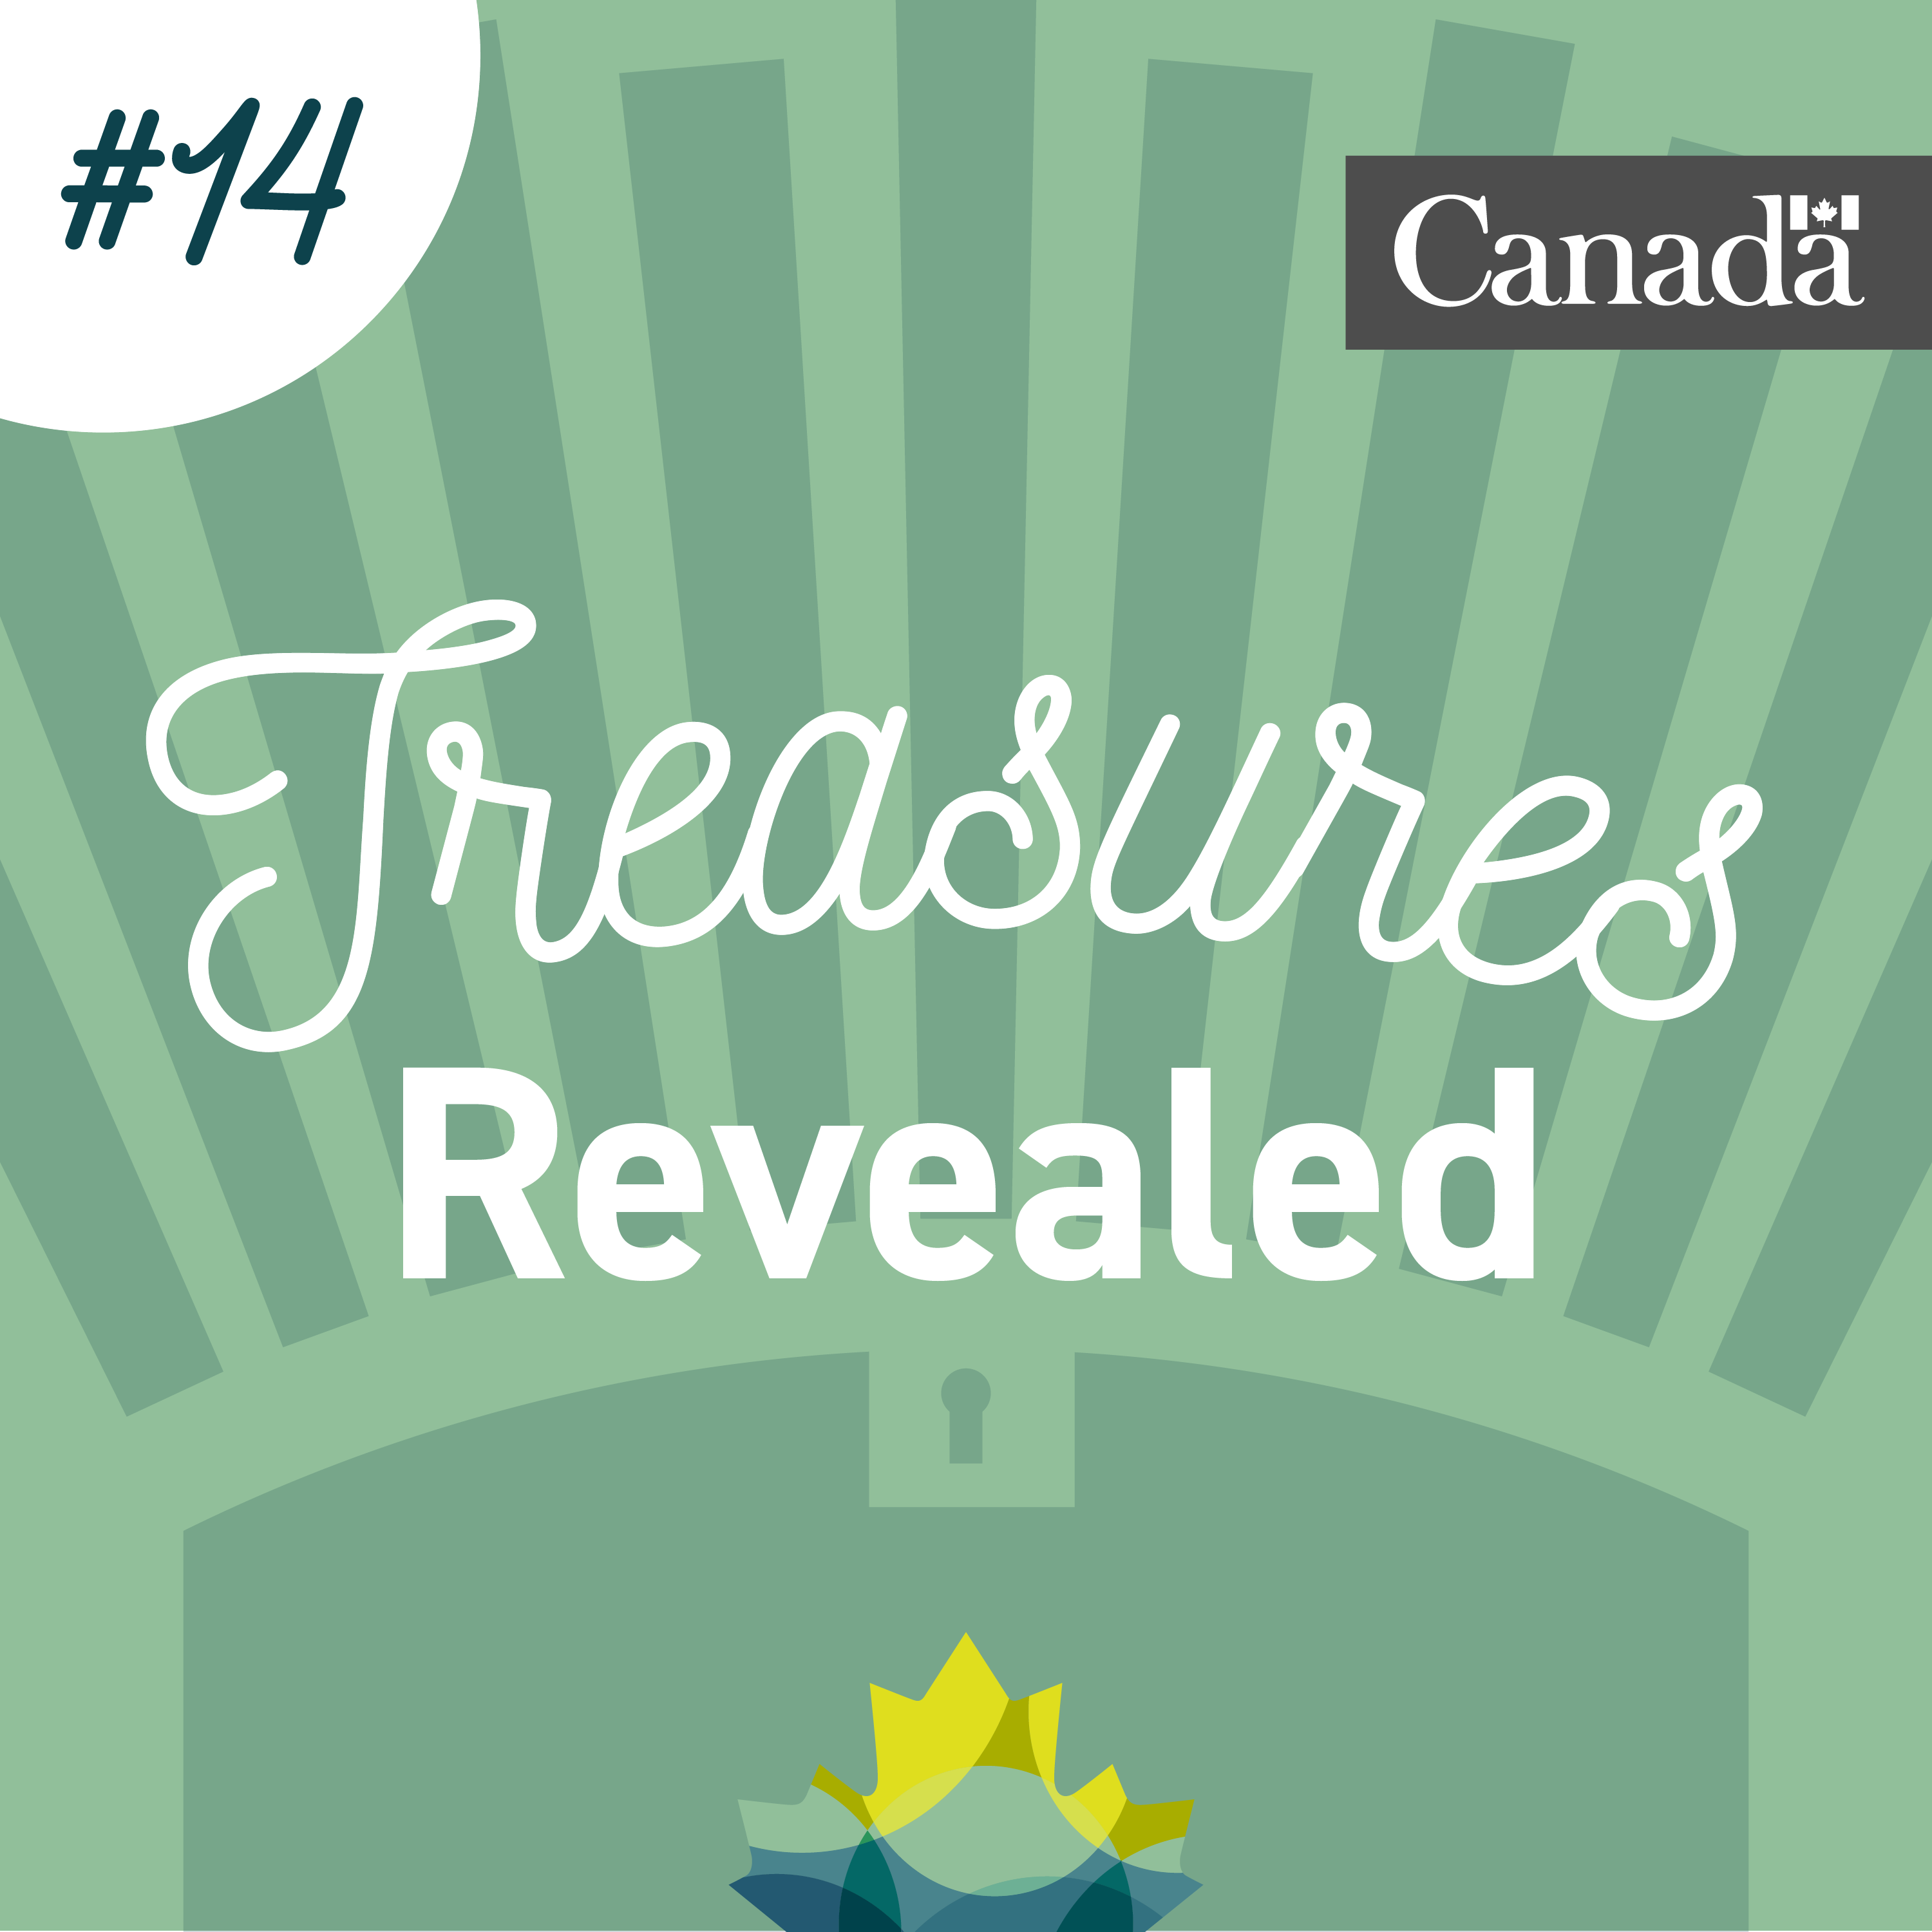 Coffre au trésor stylisé de couleur verte dans lequel se trouve la feuille d’érable de Bibliothèque et Archives Canada. Des rayons sortent du coffre. L’image porte le numéro 14.